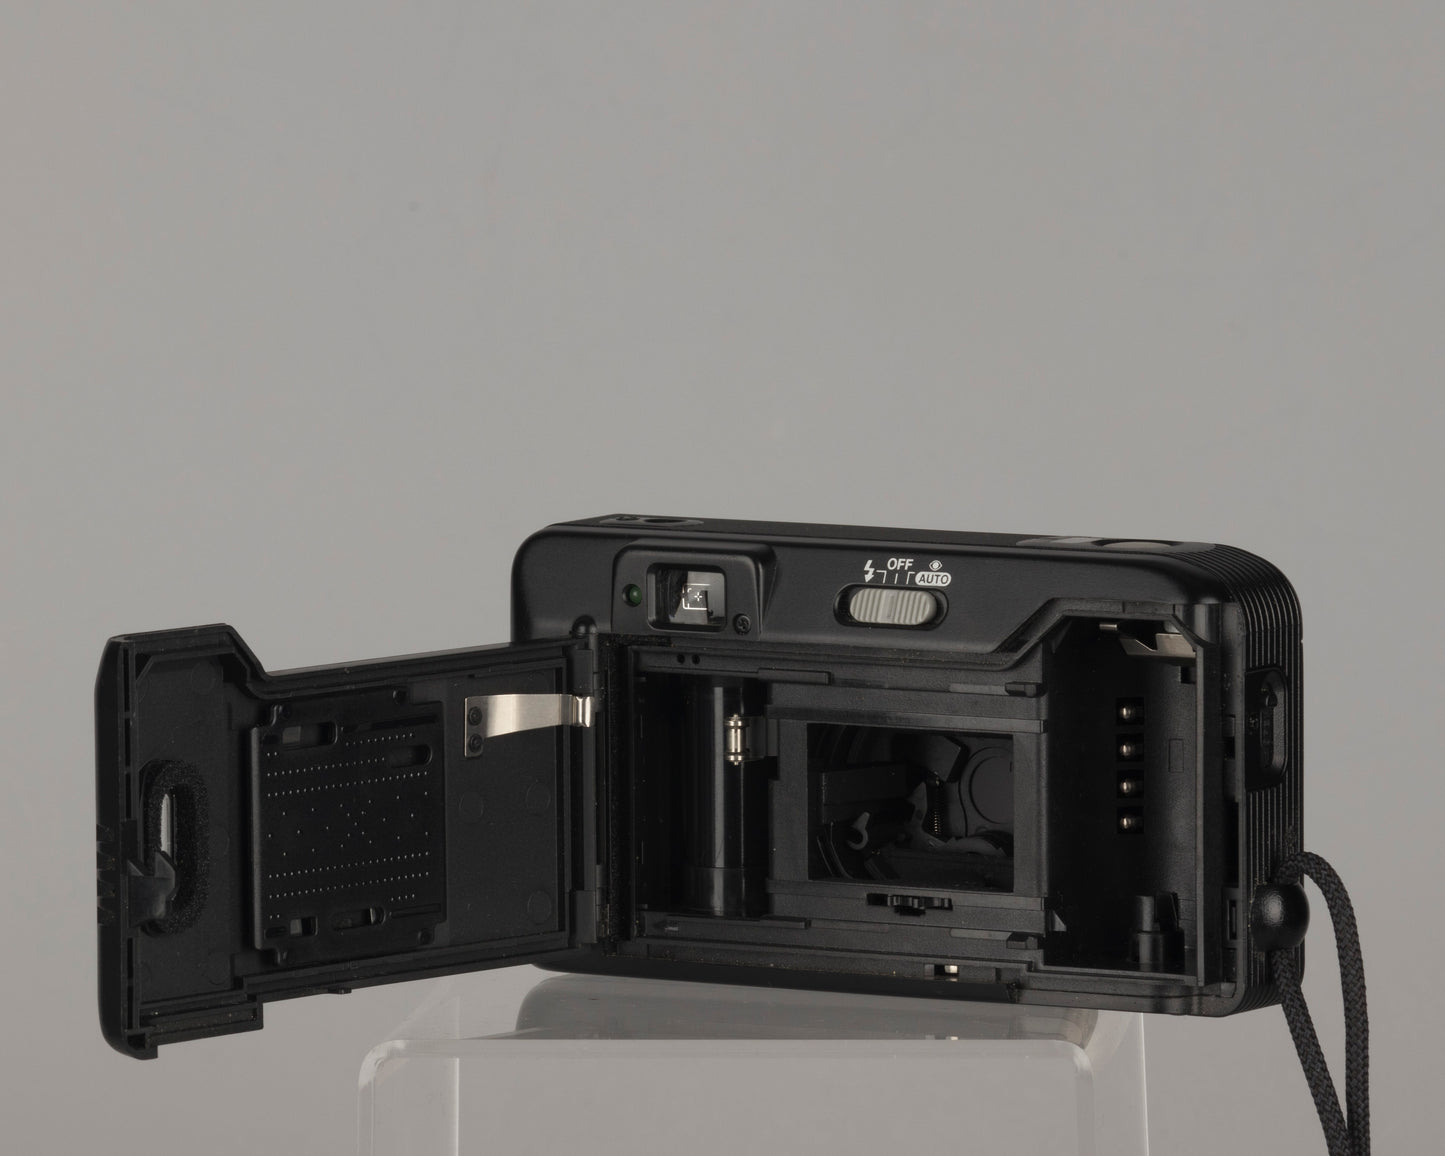 Canon Sure Shot Tele Max 35mm film camera